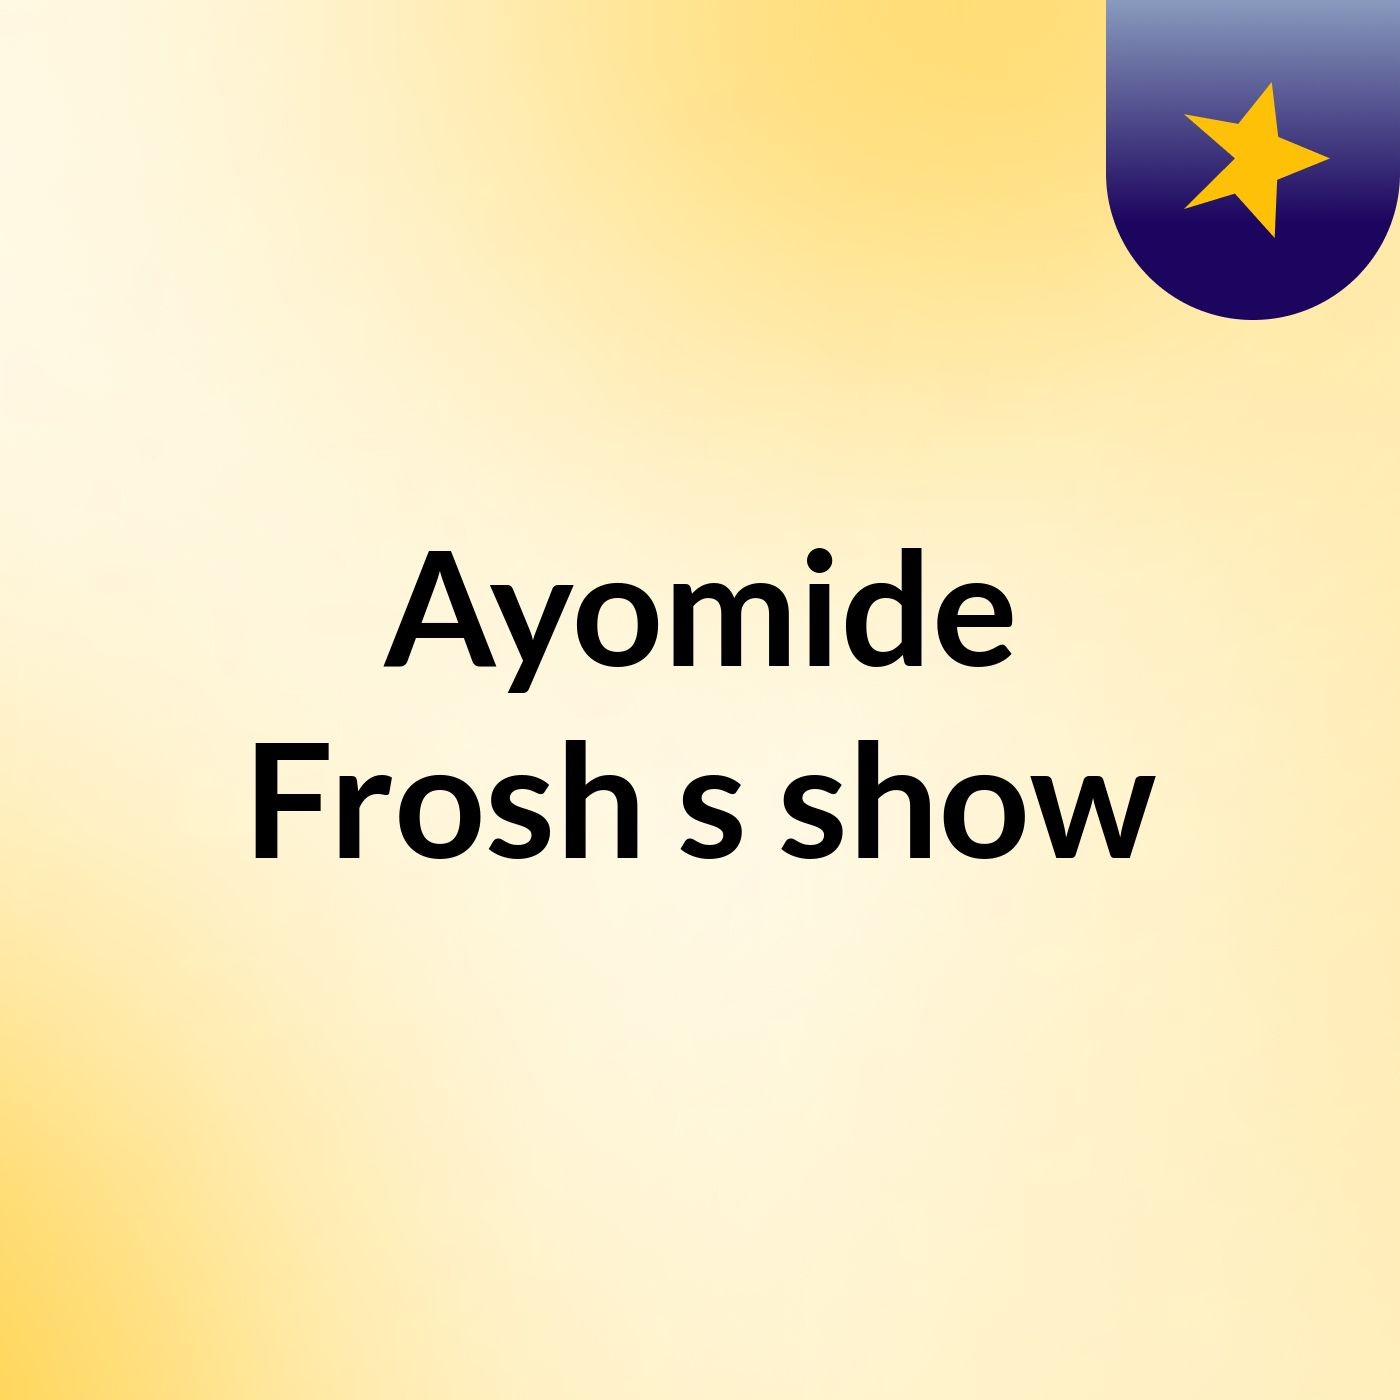 Episode 2 - Ayomide Frosh's show